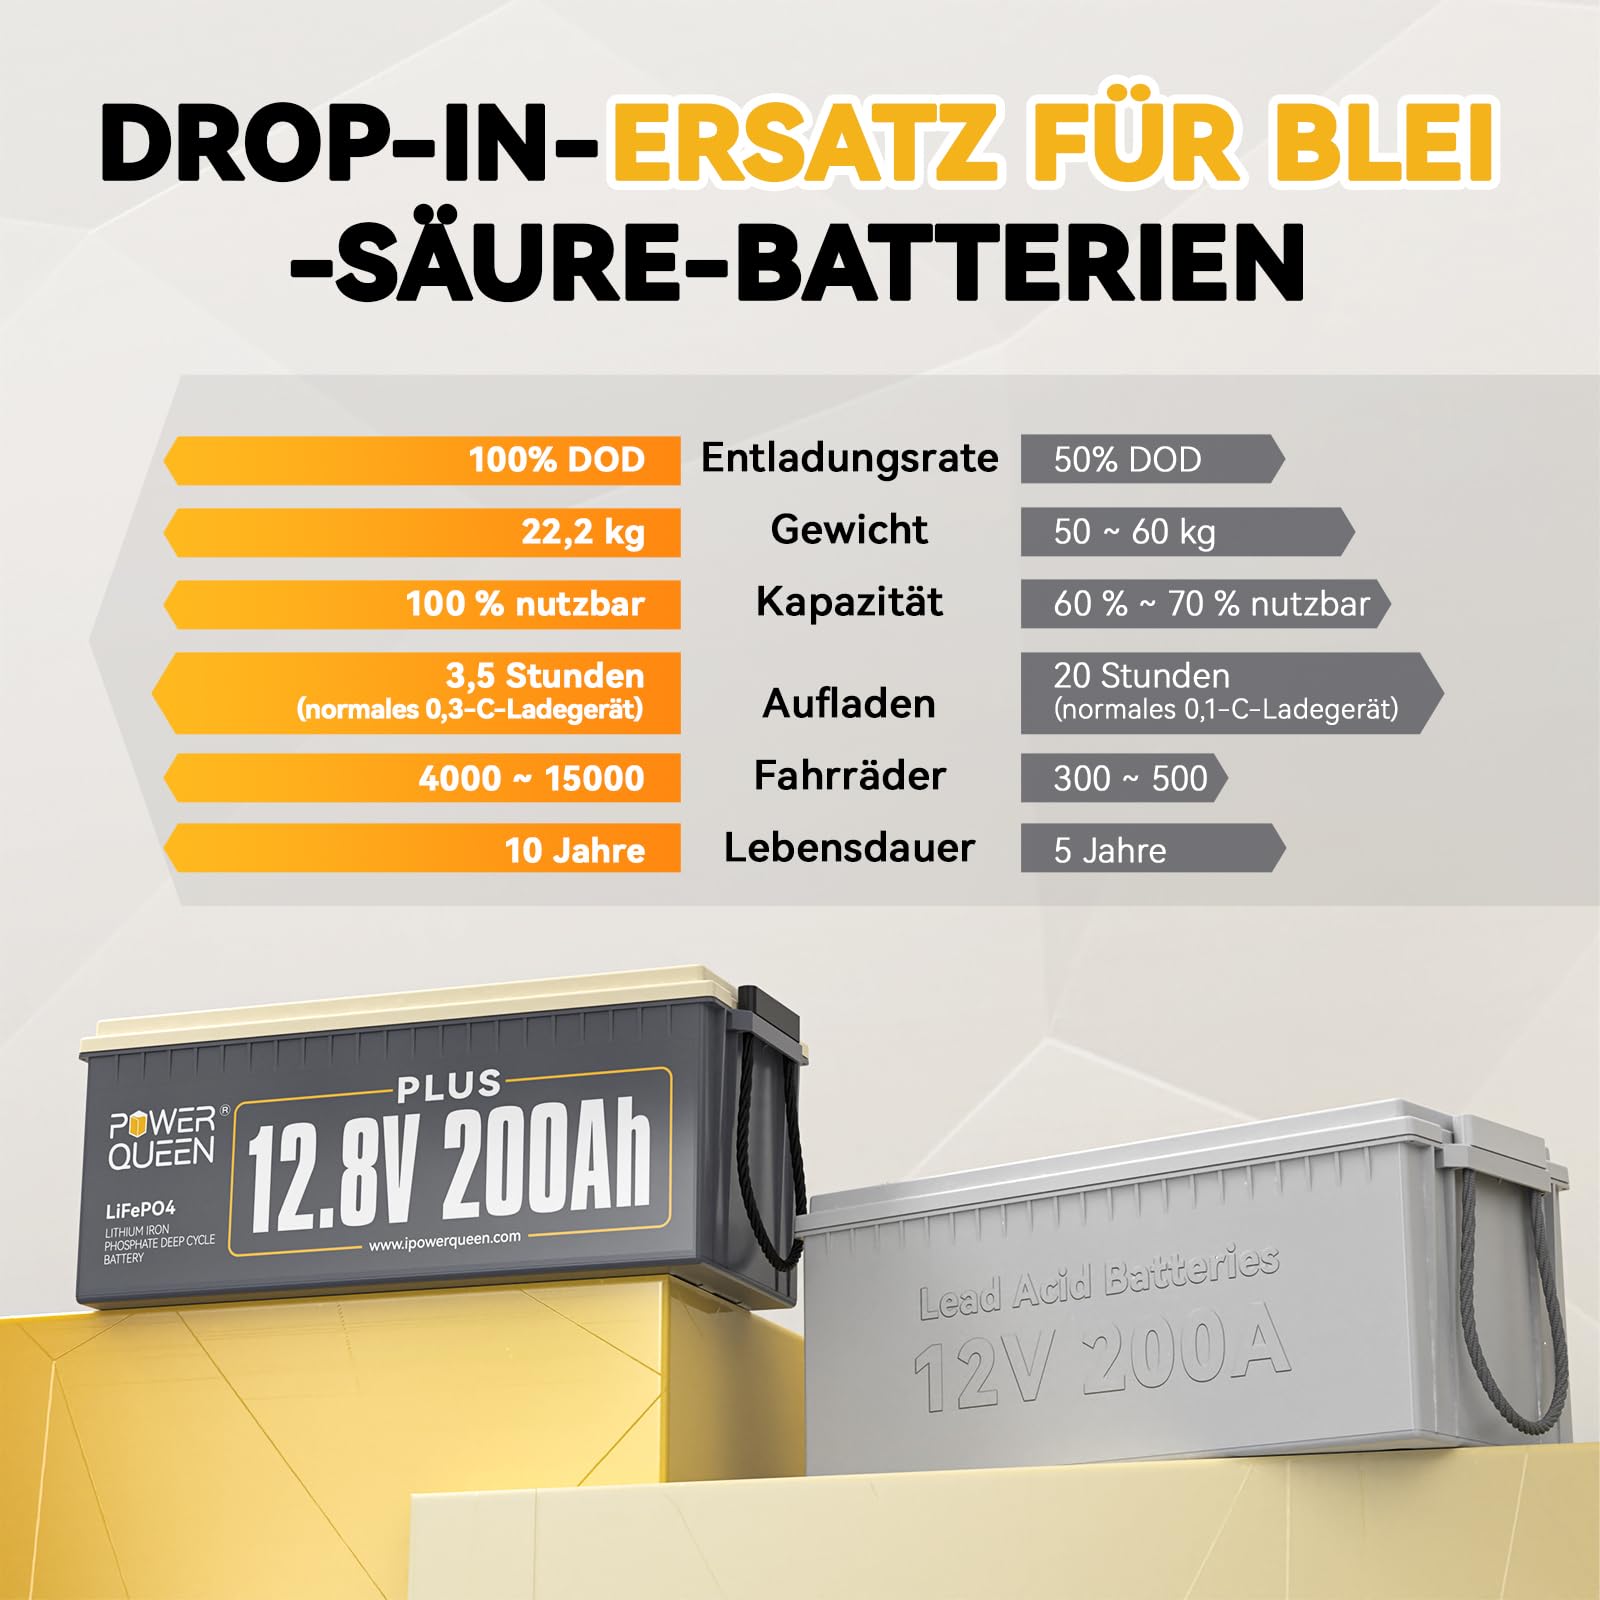 【0% BTW】Power Queen 12,8 V 200 Ah Plus LiFePO4-batterij, ingebouwd 200 A BMS